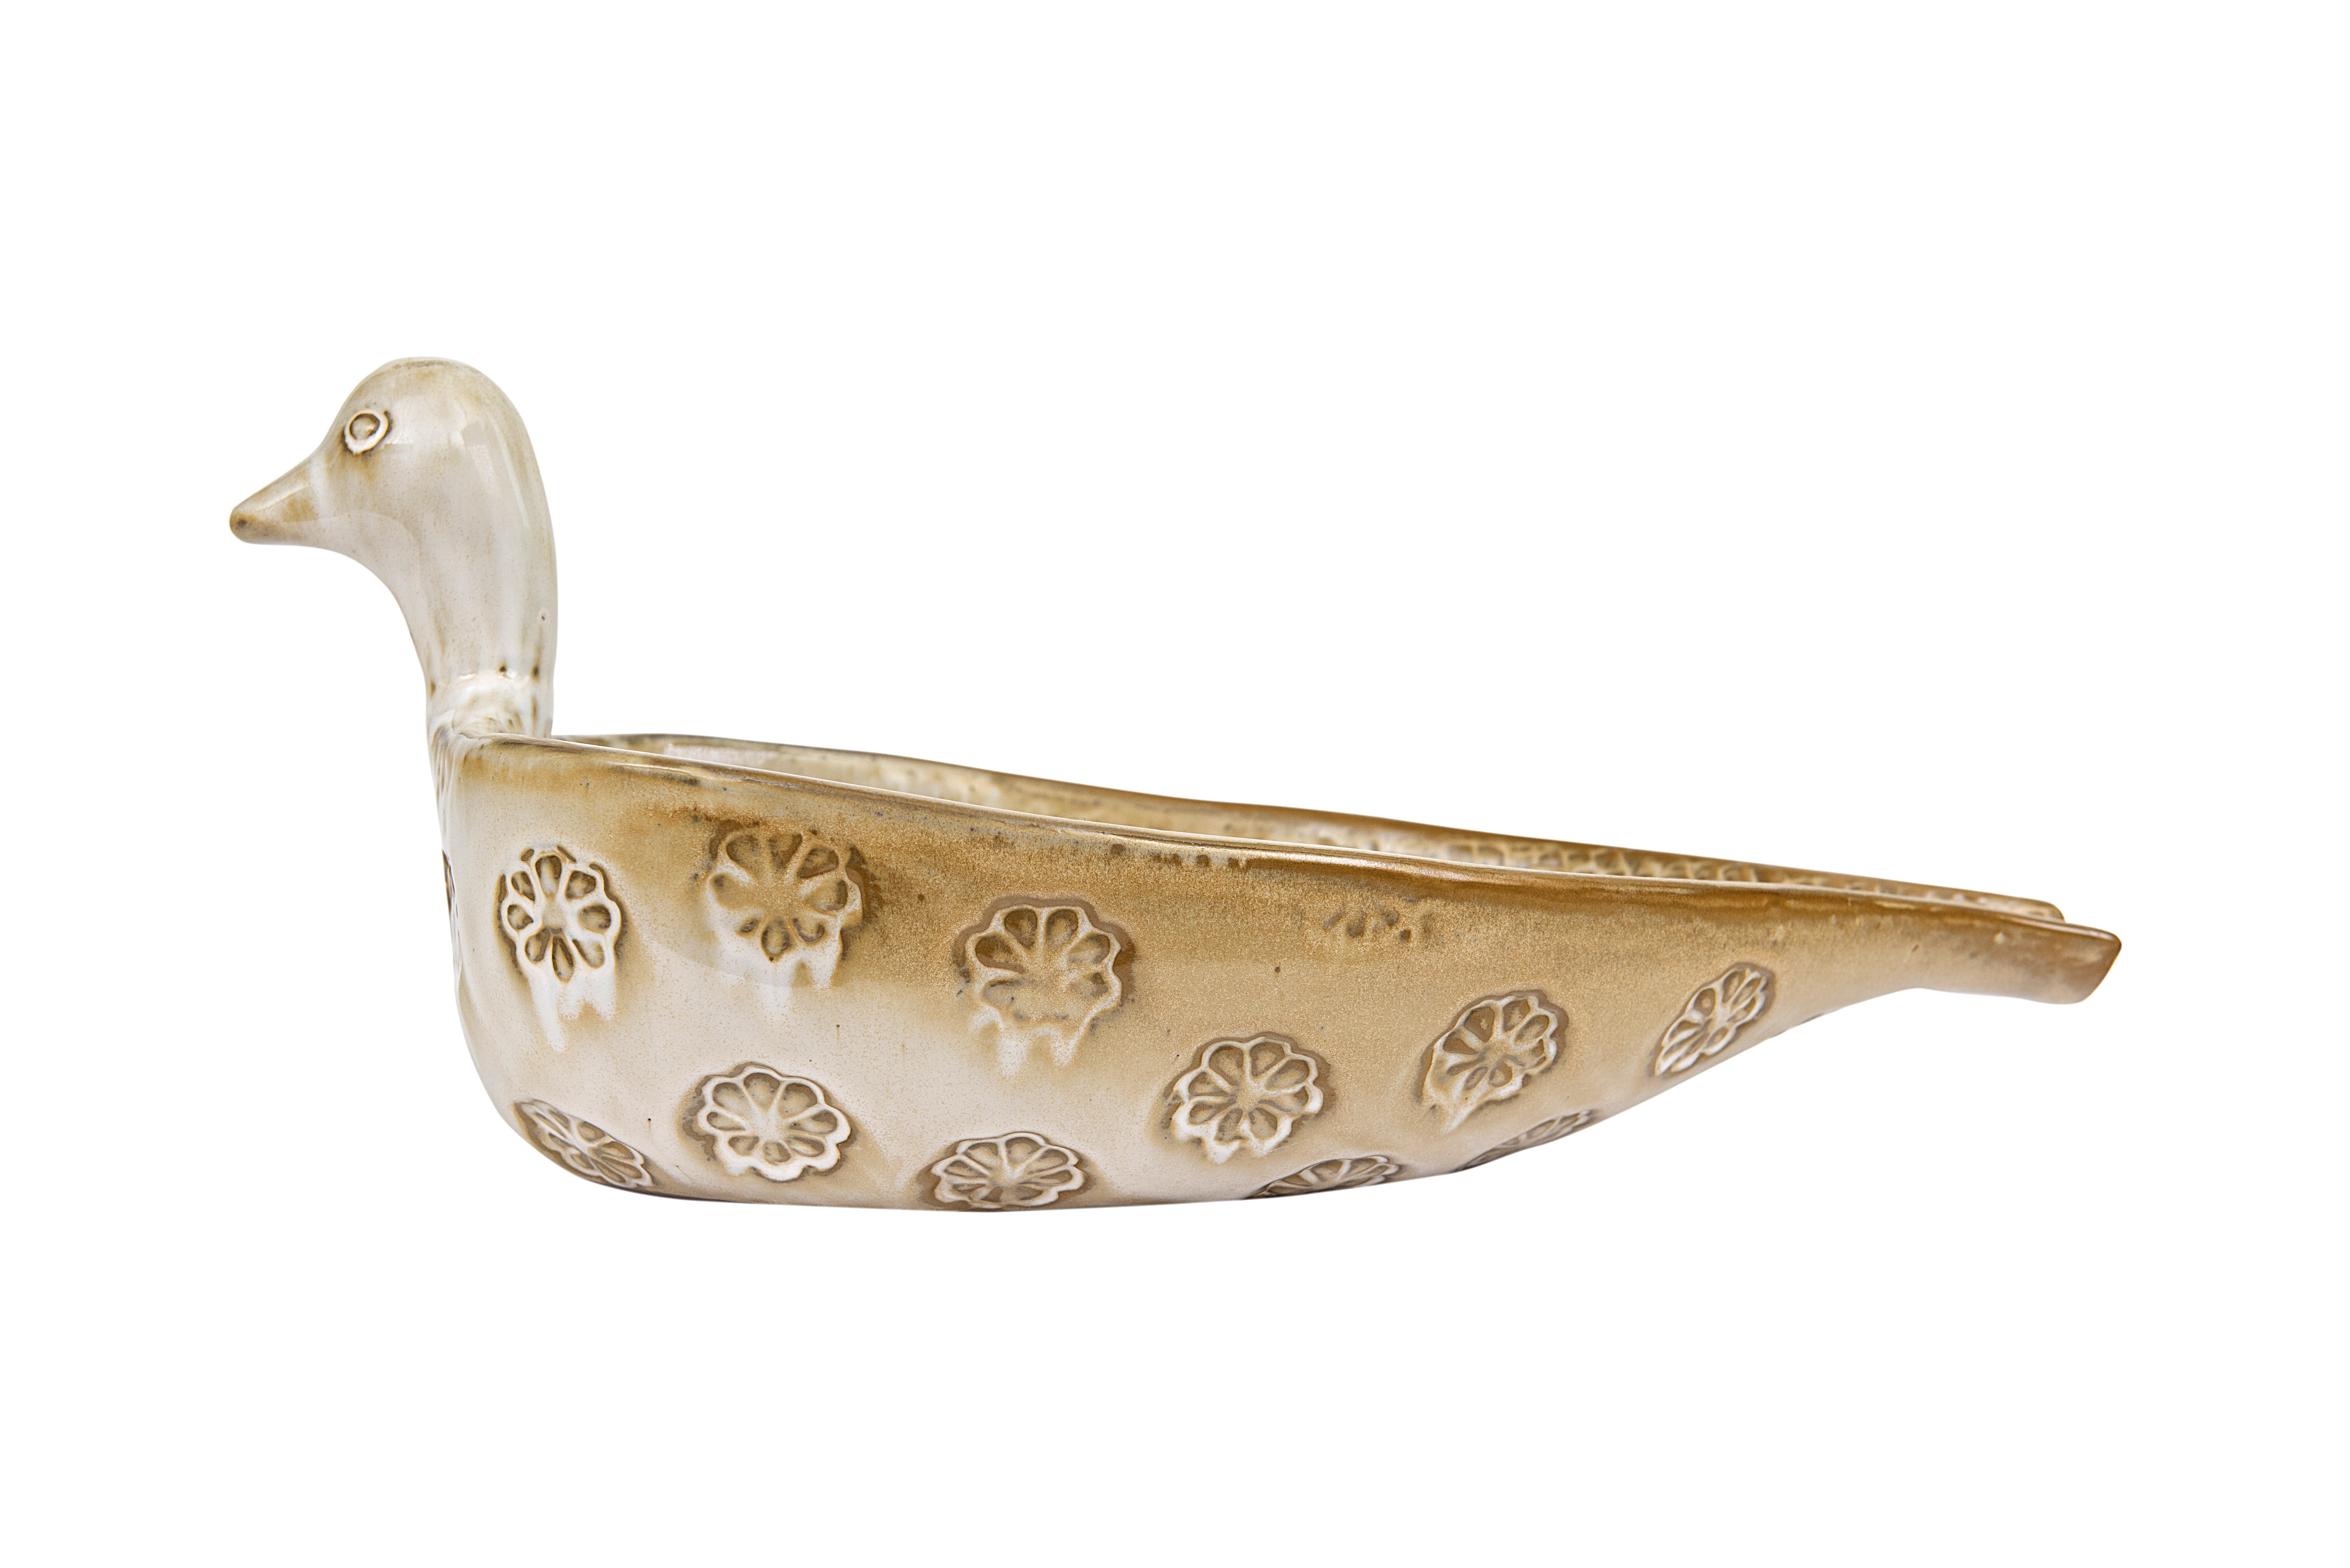 Decorative Terra-Cotta Bird Bowl in Distressed Cream Finish - Image 0